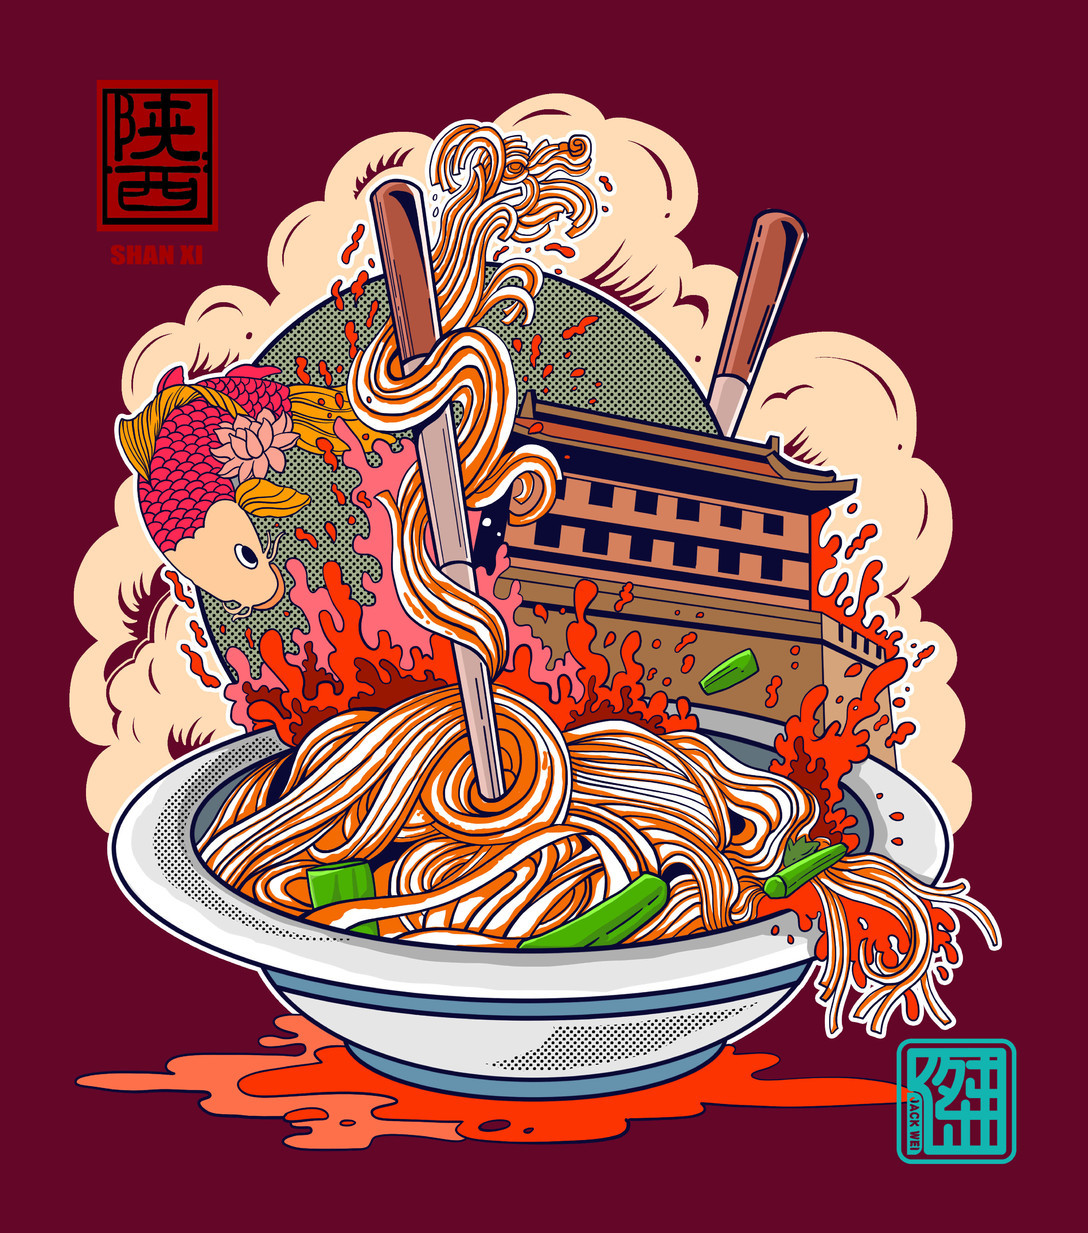 年前创作的一组陕西美食系列插画